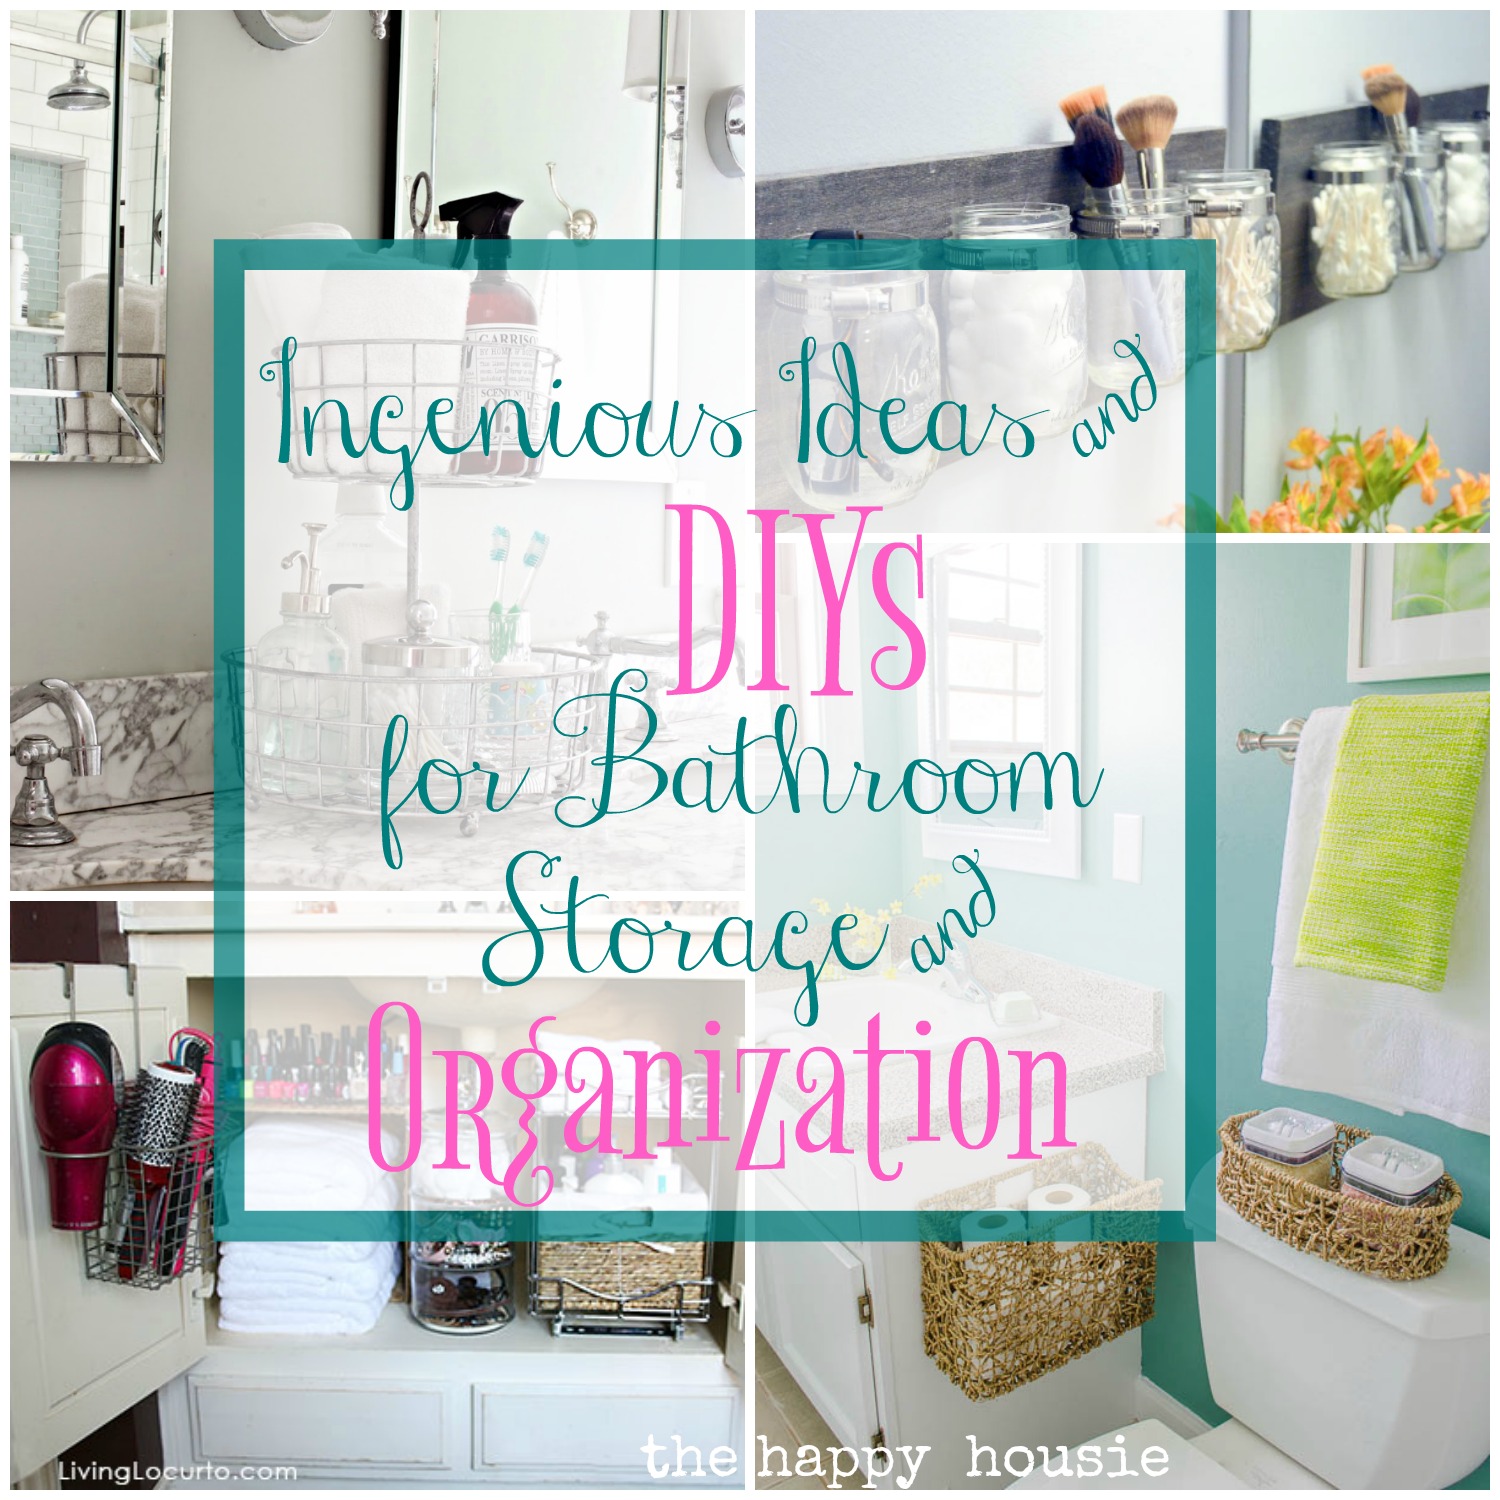 Bathroom Storage & Organization